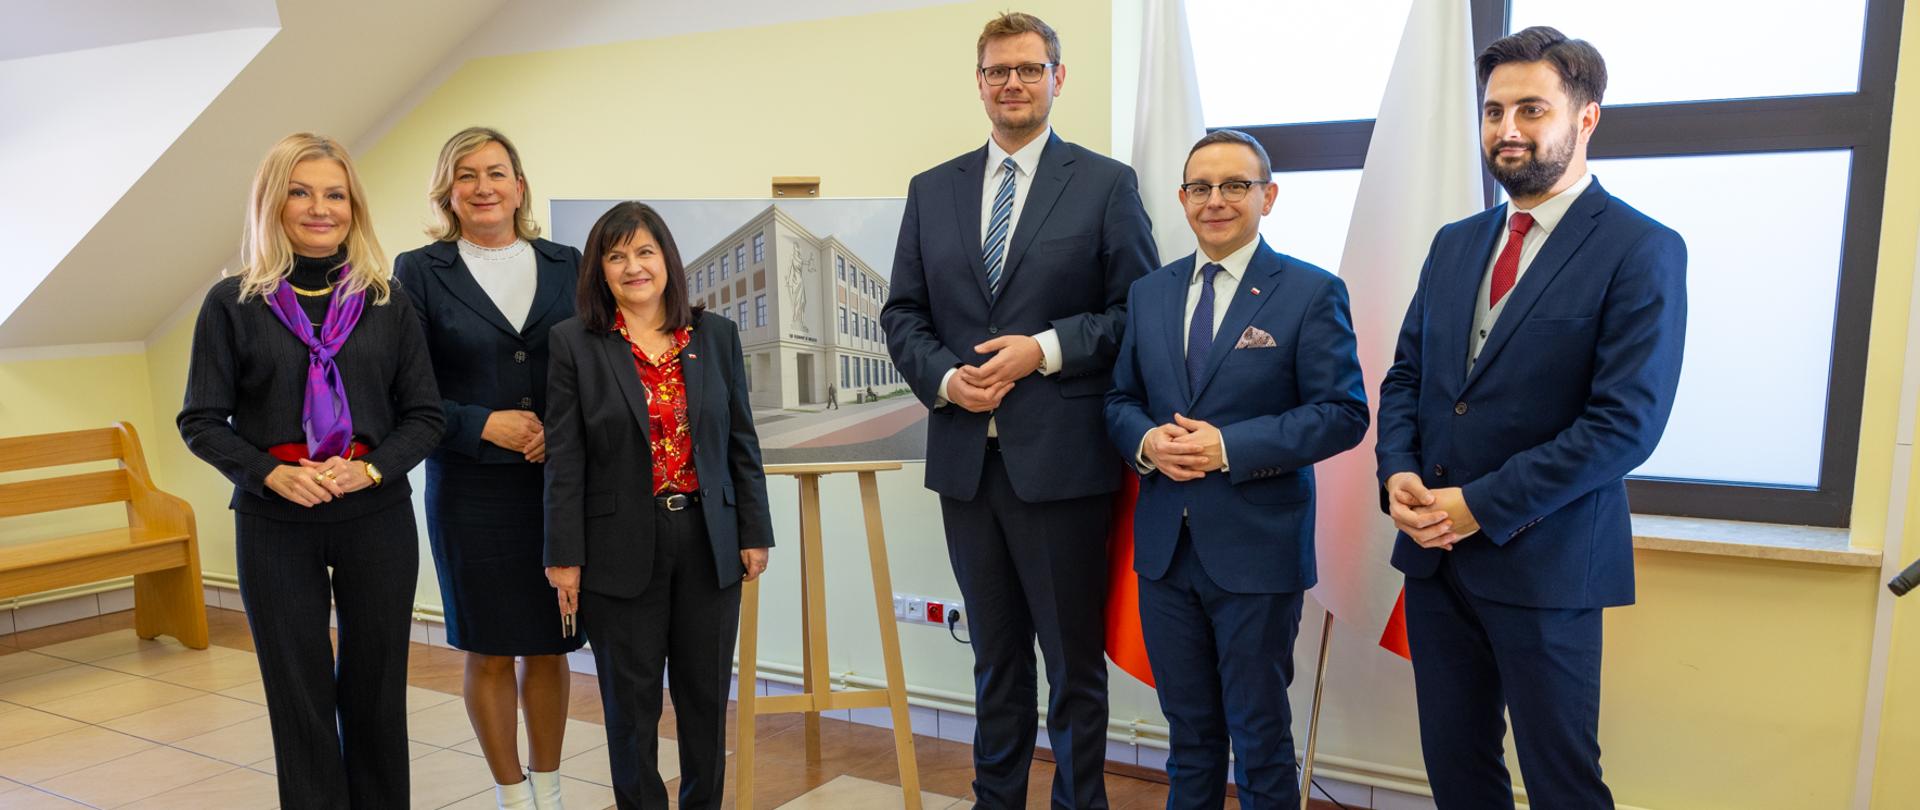 Umowa na budowę nowego gmachu Sądu Rejonowego I Prokuratury Rejonowej w Wieliczce podpisana